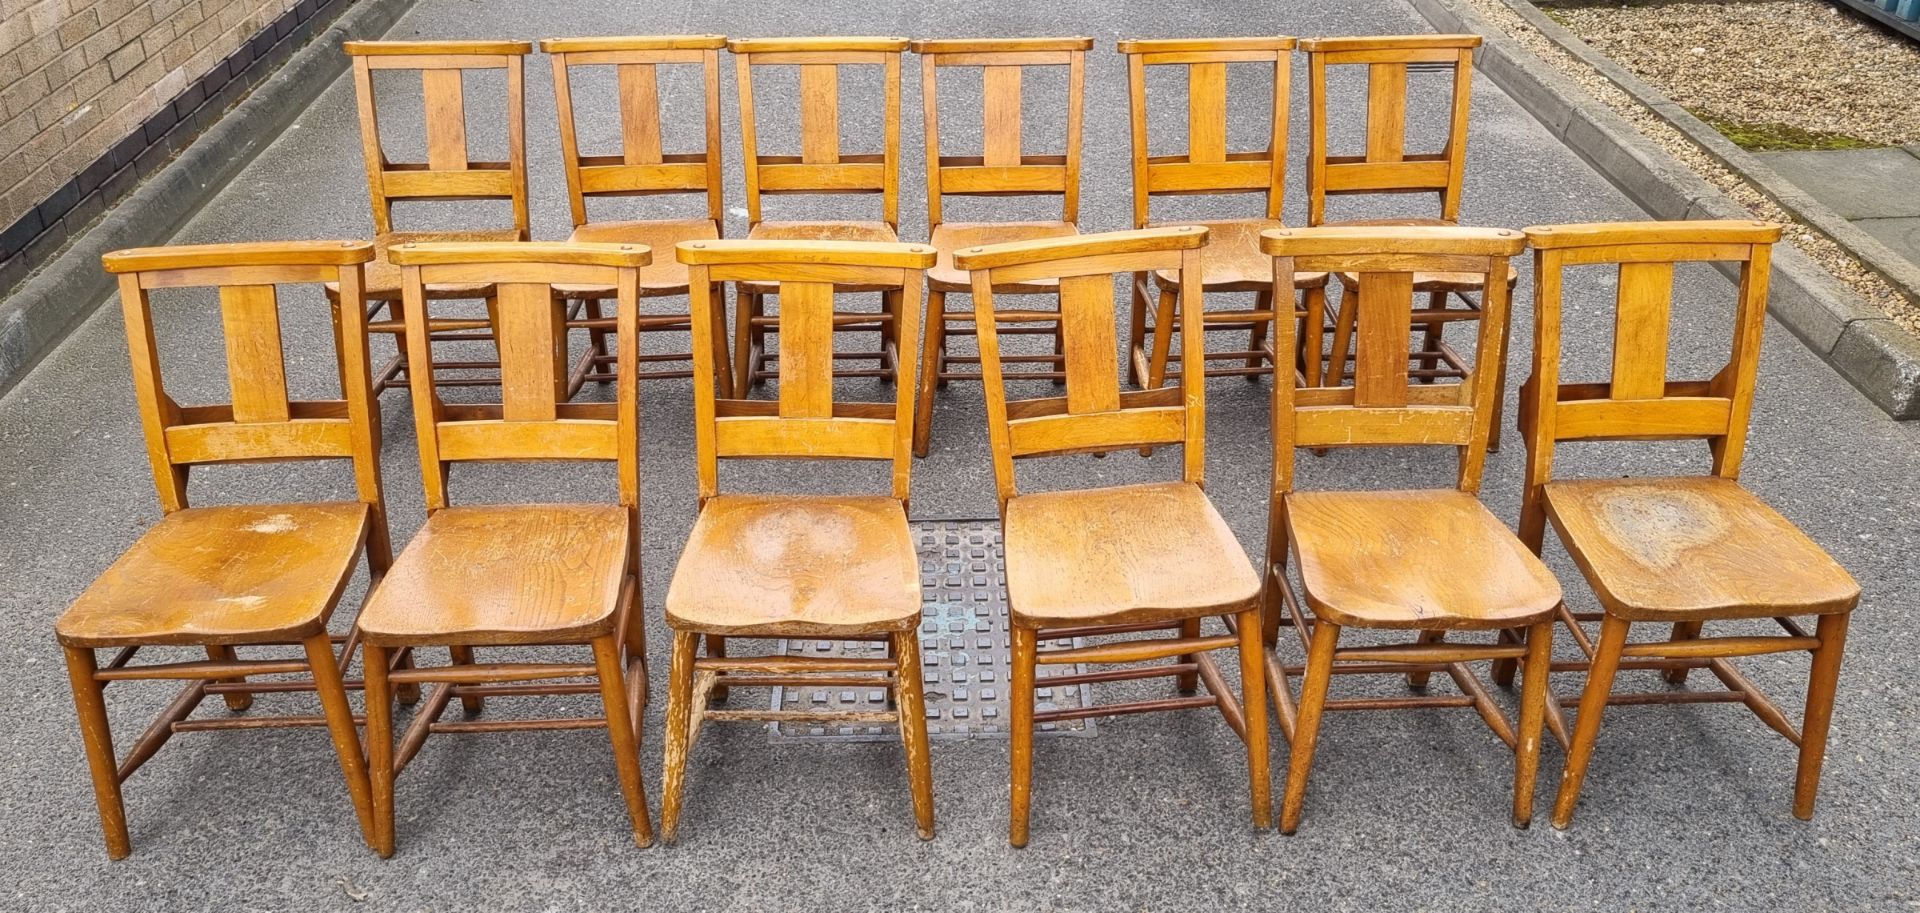 12x Wooden chairs with rear book holder - L 420 x W 420 x H 820mm - Bild 2 aus 10